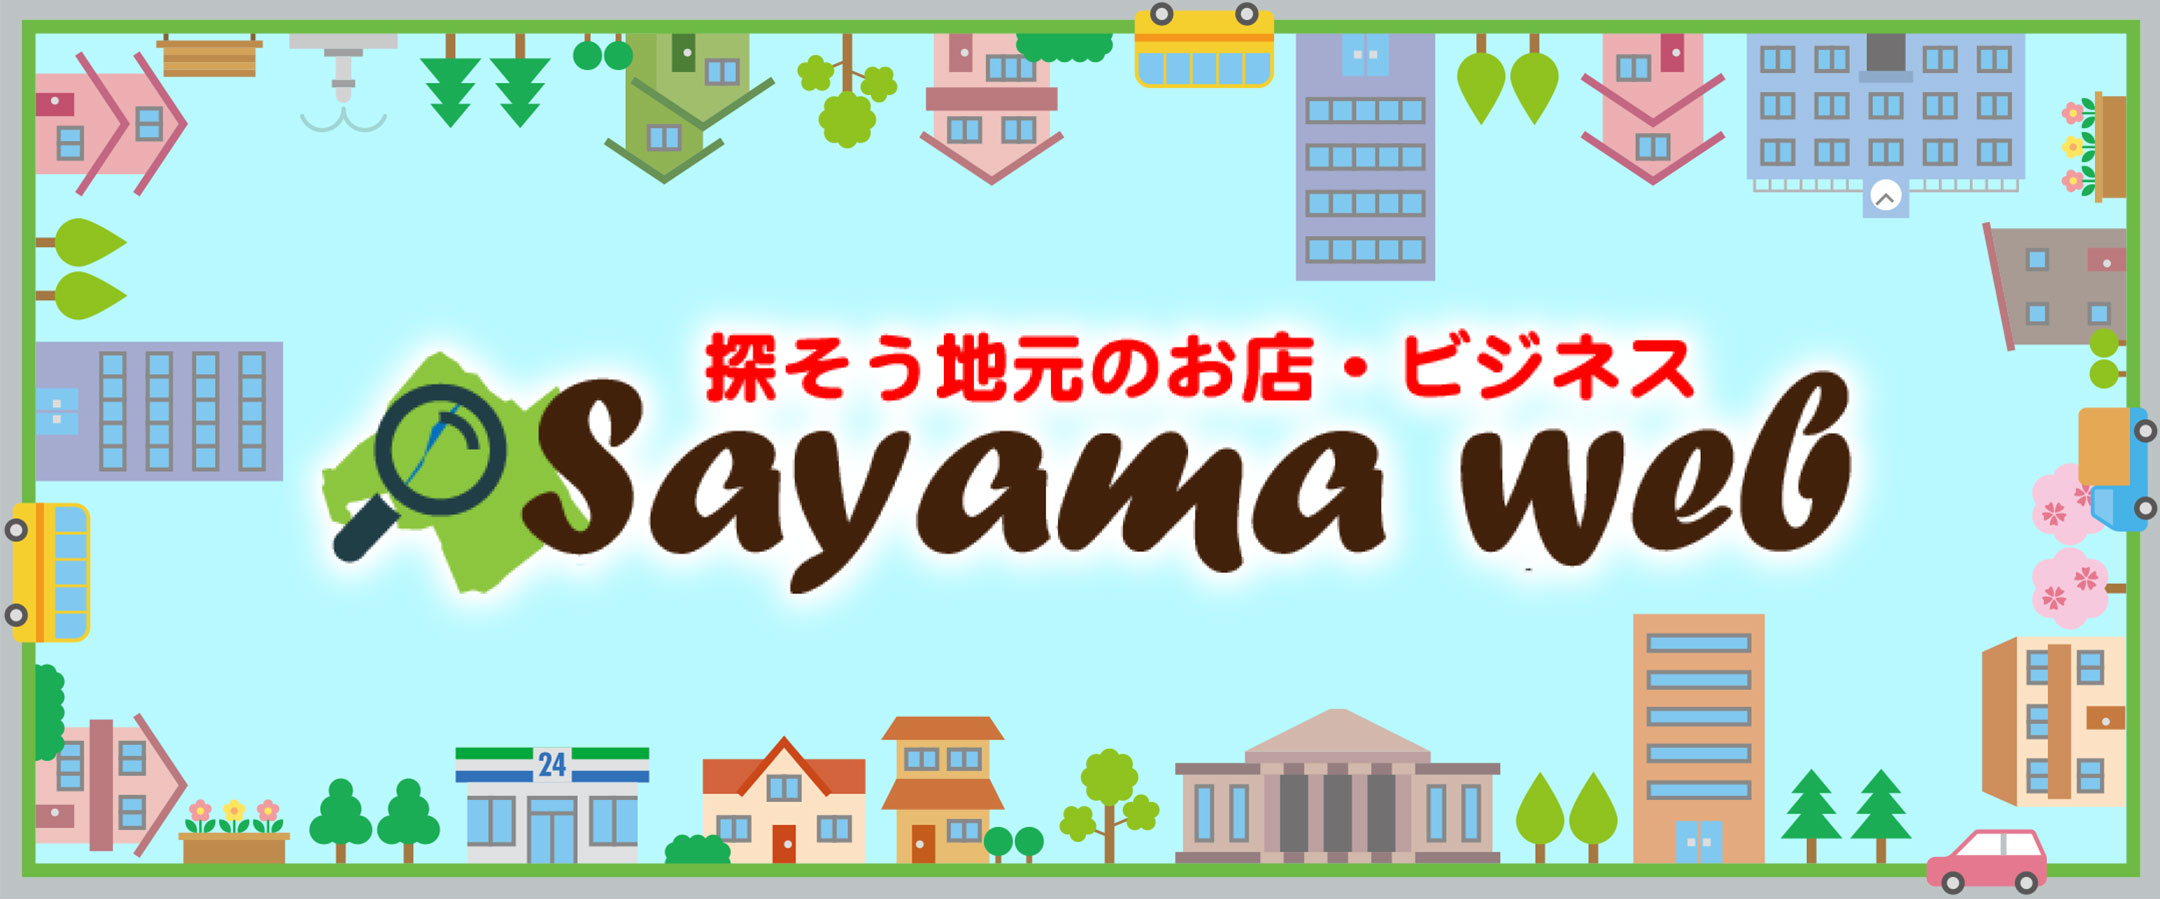 探そう地元のお店・ビジネス  Sayama-web